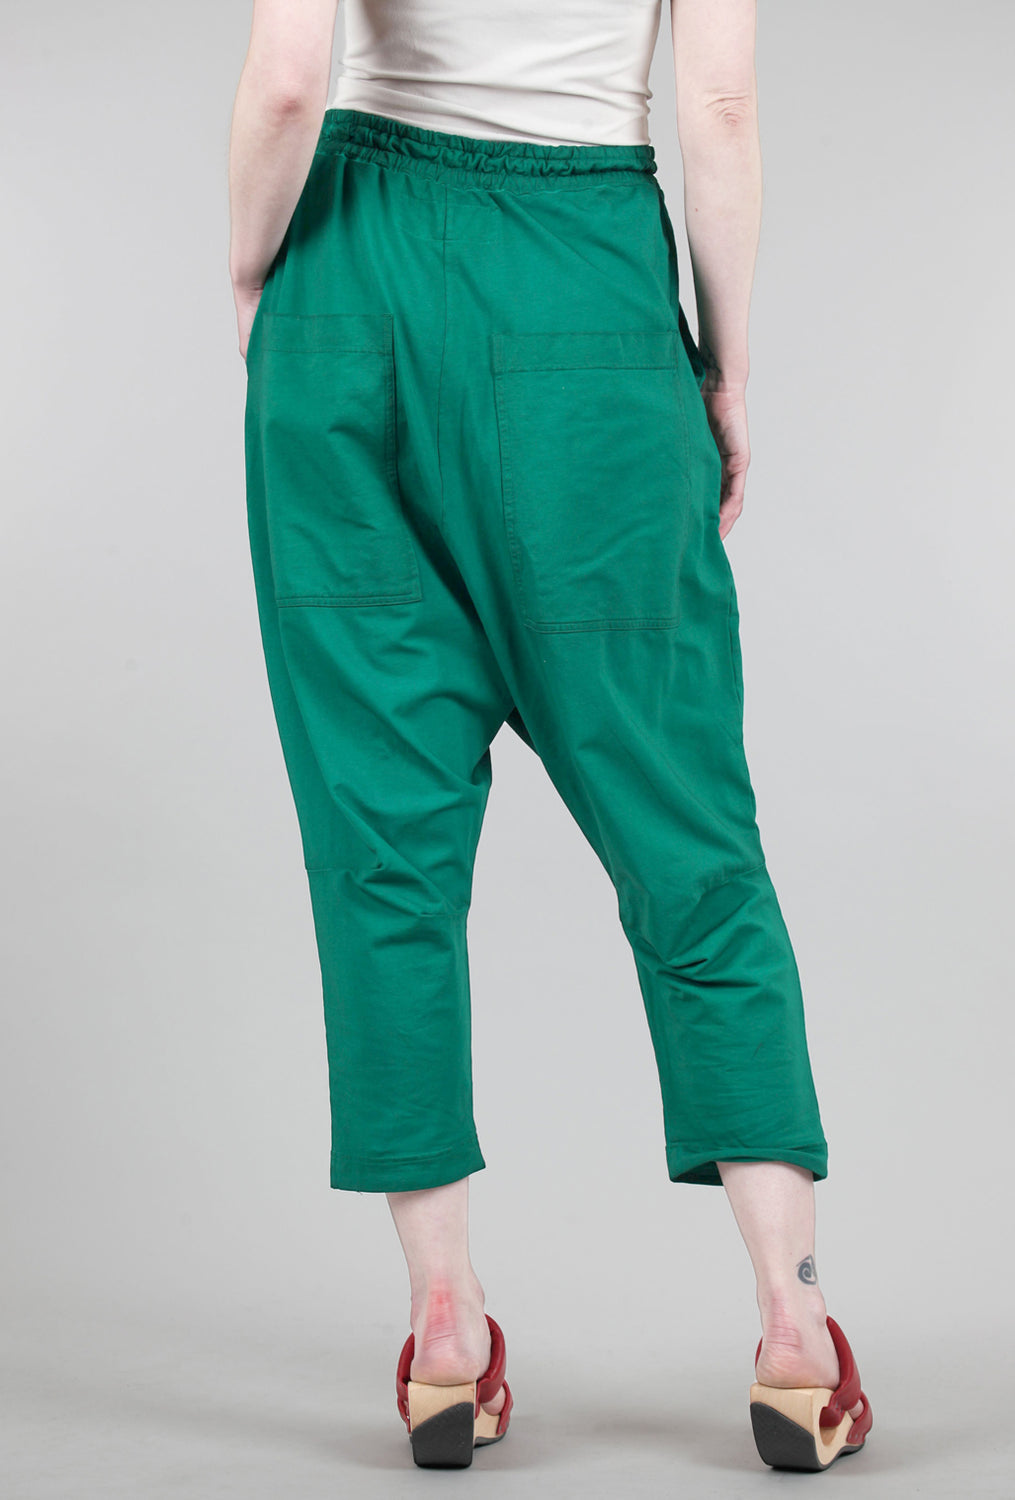 Rundholz Knit Pocket Pant, Green 